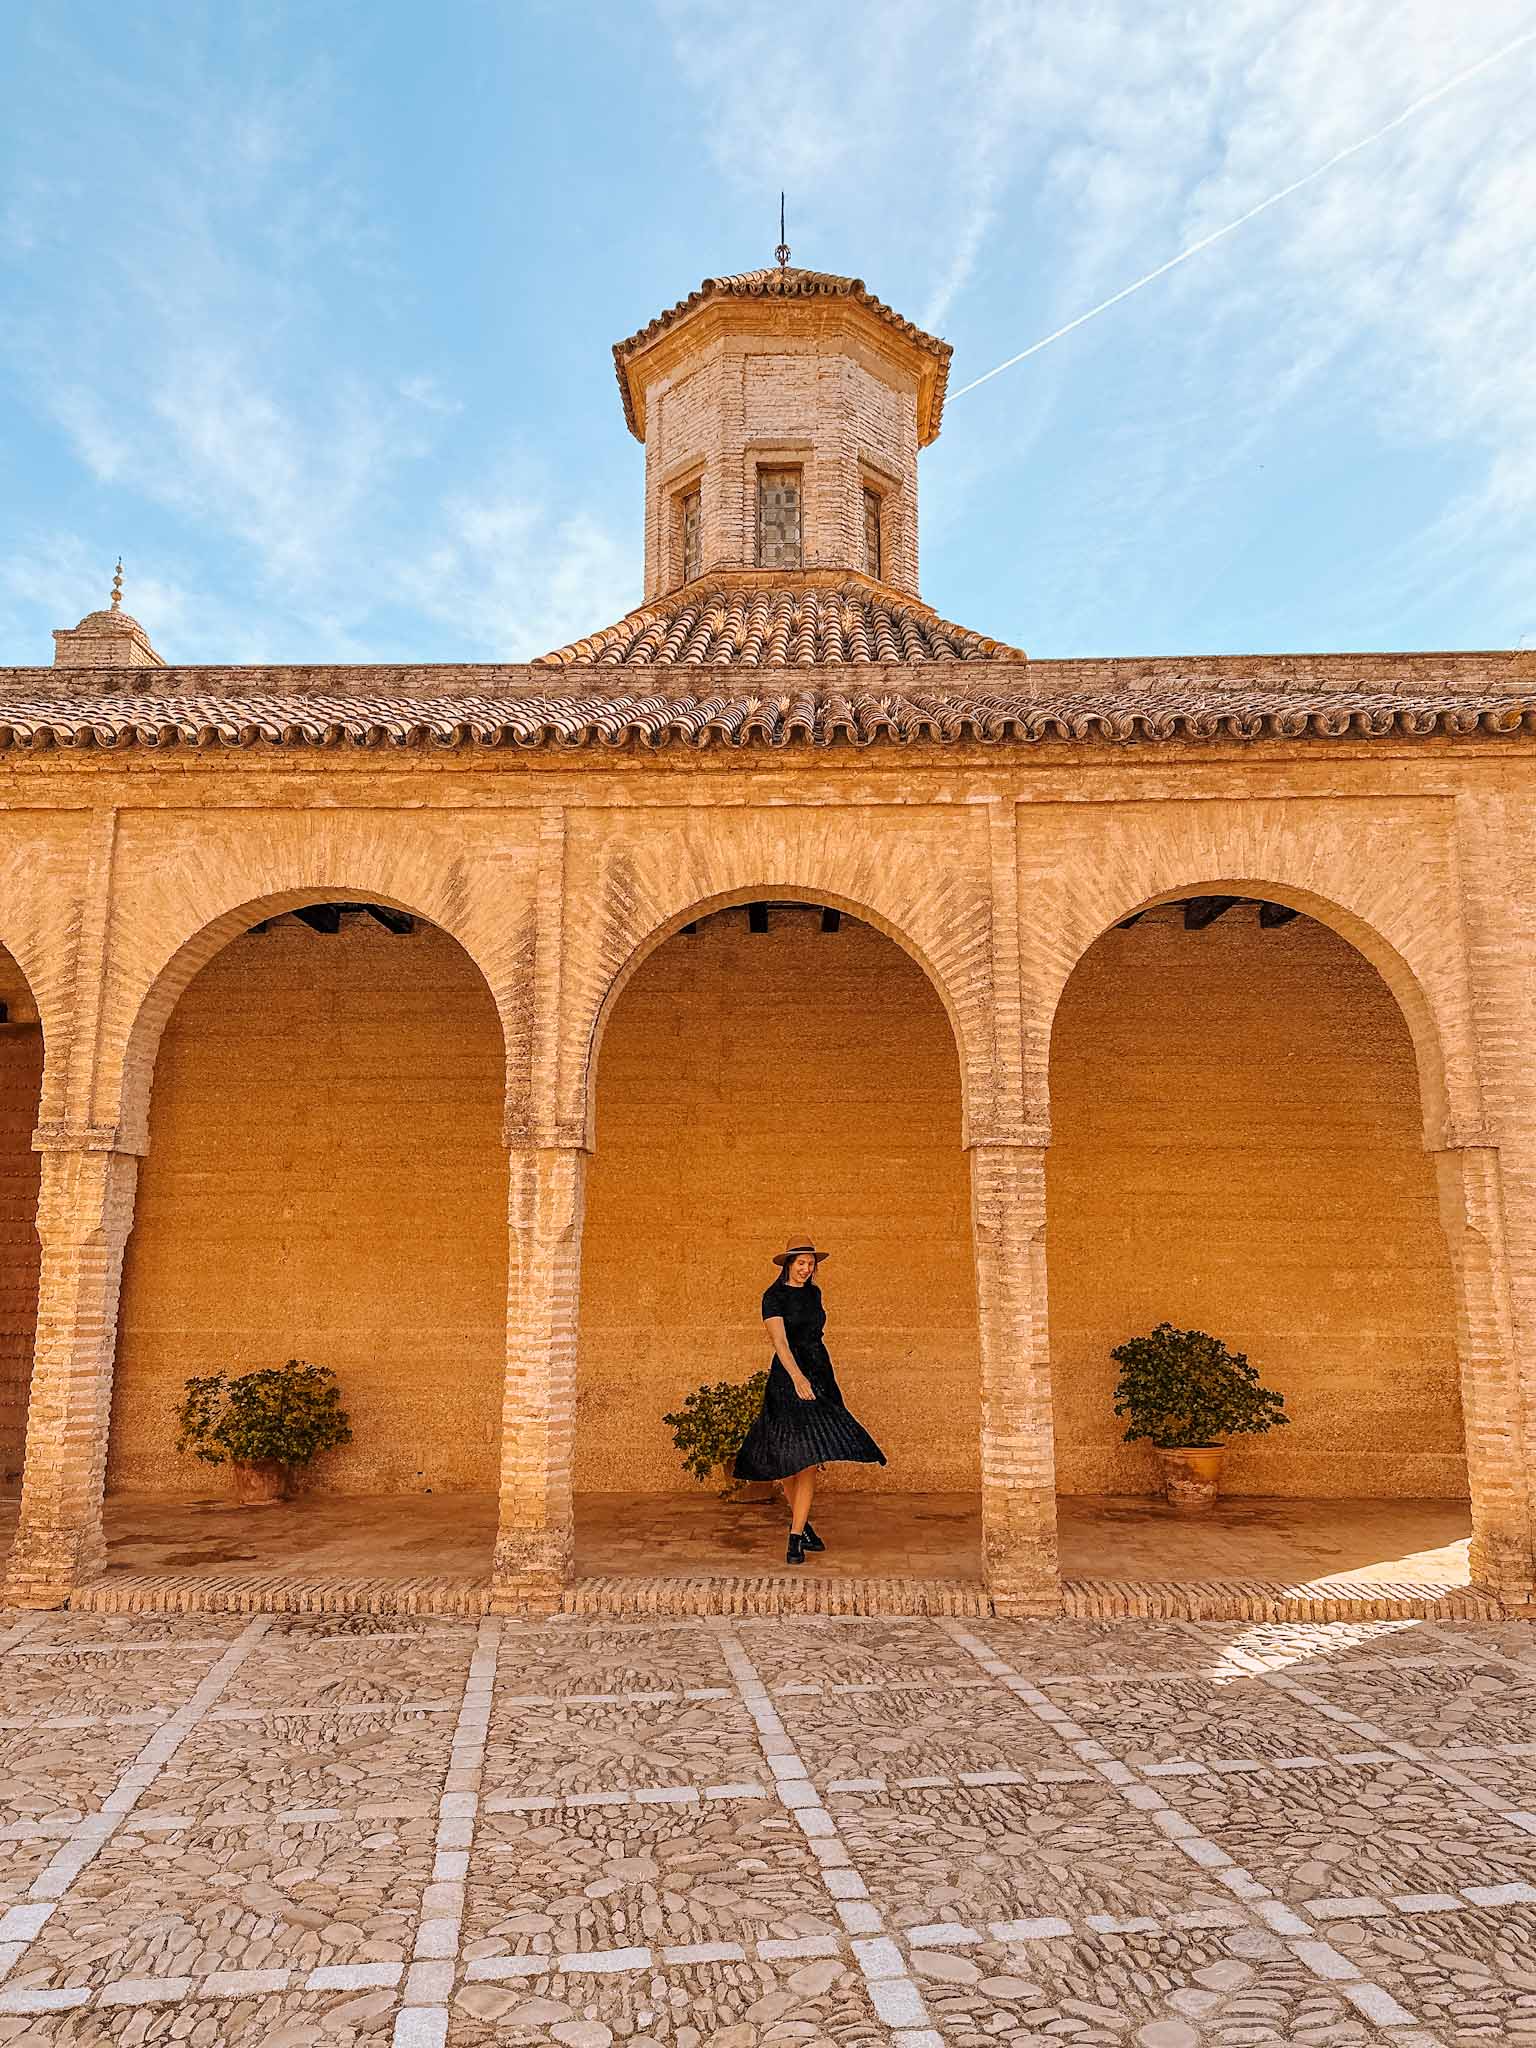 Best Instagram photo spots in Jerez de la Frontera, Spain